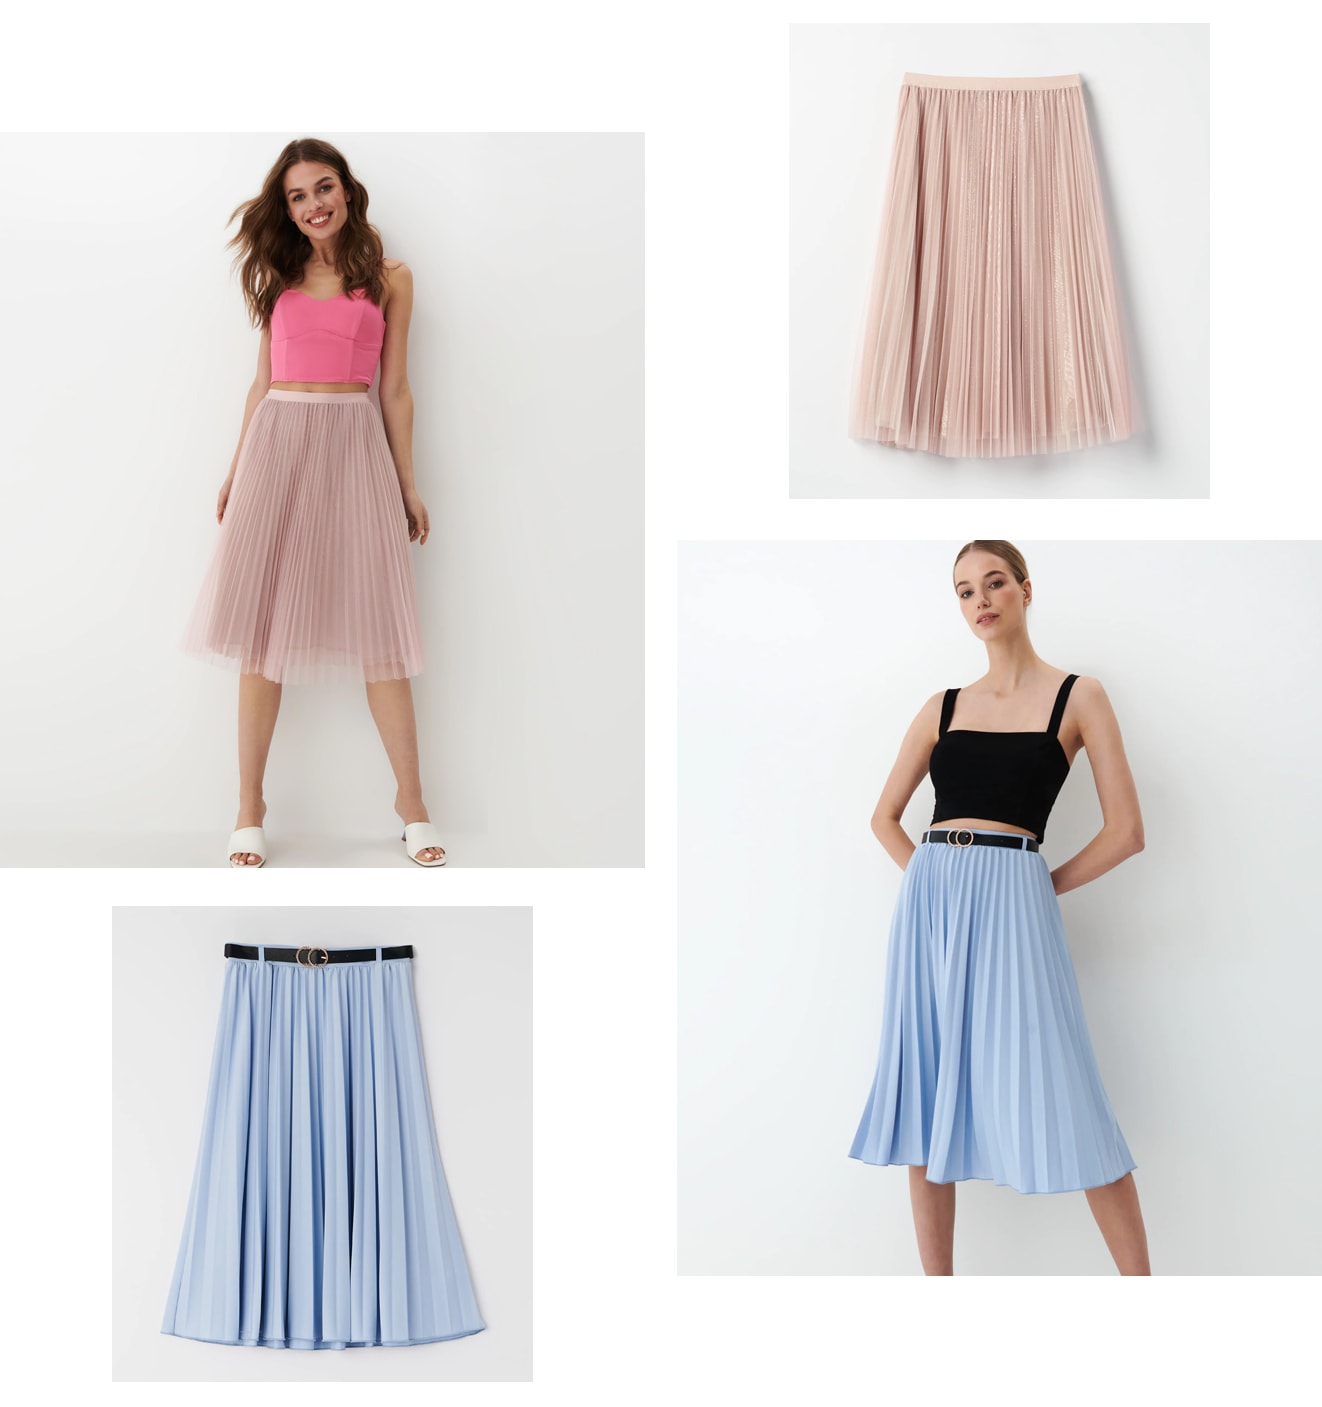 propozycje stylizacji ze spódnicą plisowaną w koloru różowym oraz niebieskim